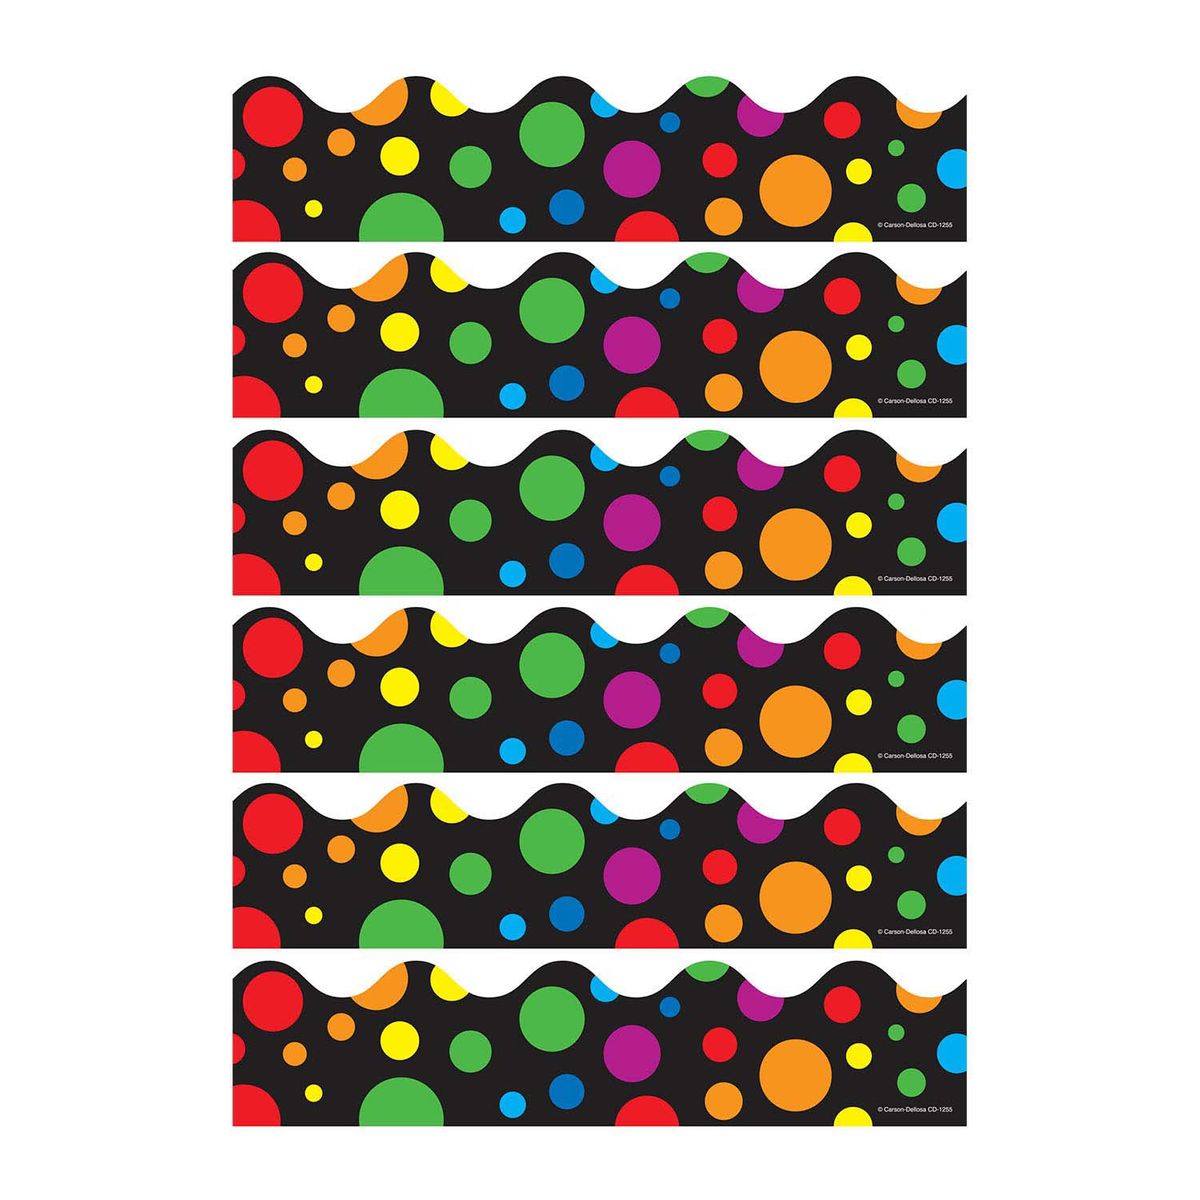 楽天Walmart 楽天市場店[RDY] [送料無料] Carson Dellosa Education ビッグレインボードットスカラップボーダー、78個入り [楽天海外通販] | Carson Dellosa Education Big Rainbow Dots Scalloped Border, 78 Pieces